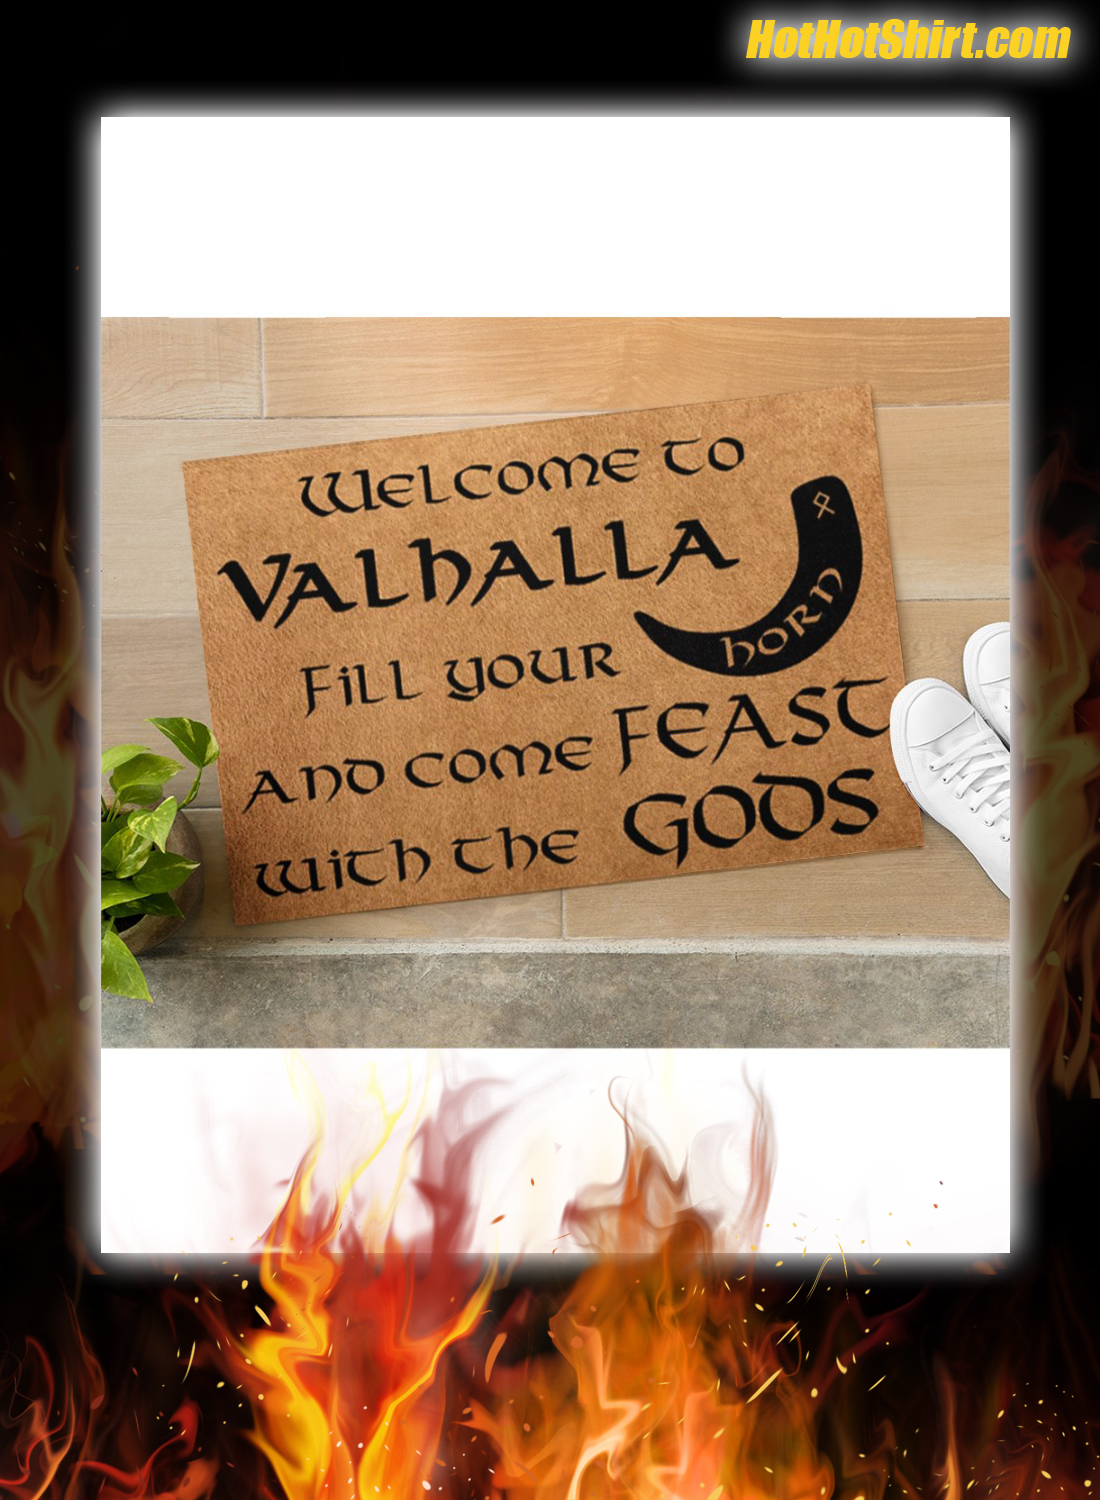 Wellcome to vahalla doormat 3